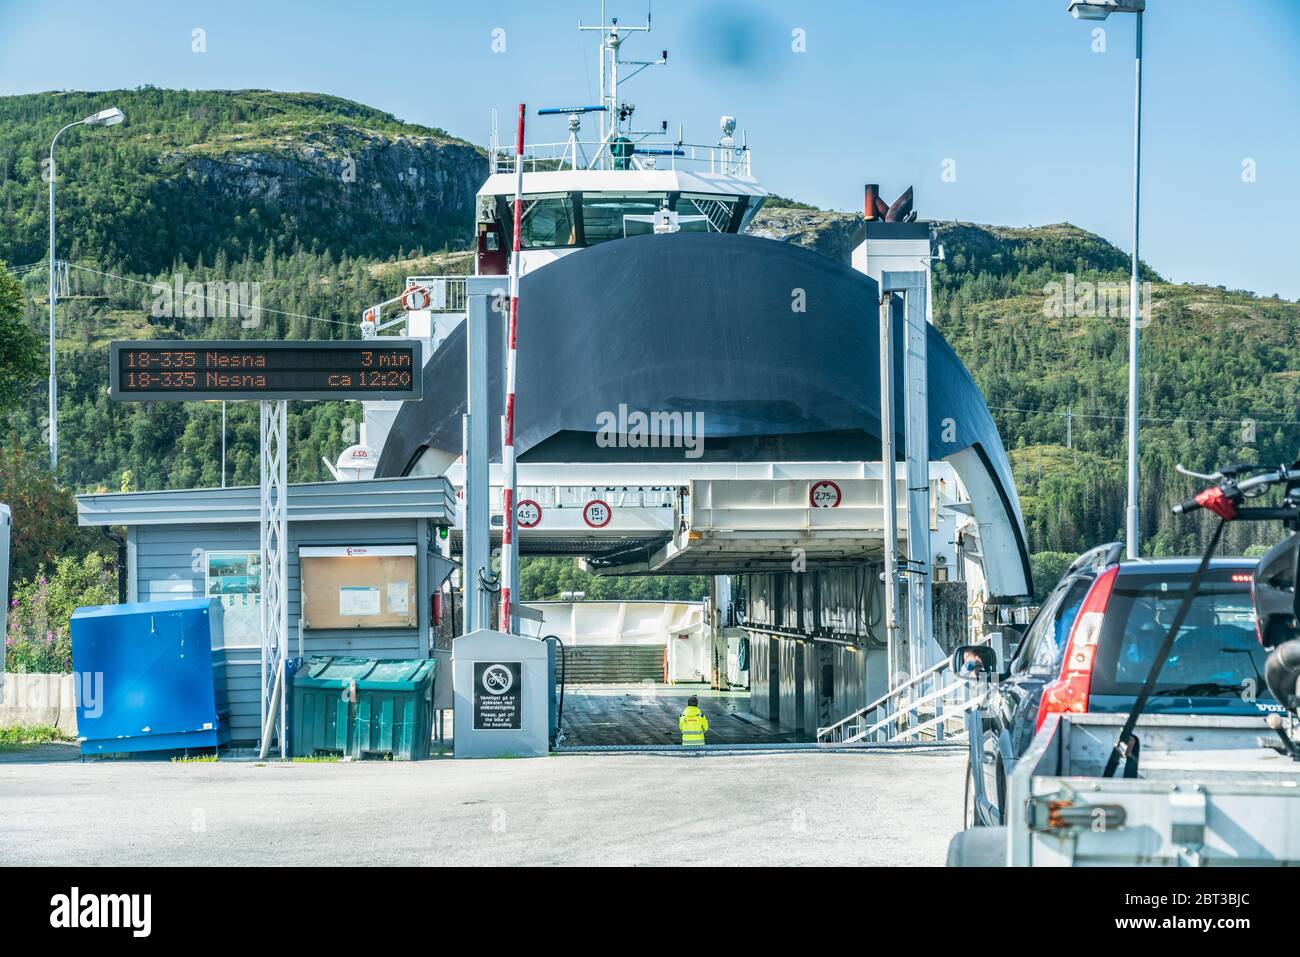 Levang, Norvège - 06 août 2019 : voiture en attente d'embarquement sur un ferry typique en Norvège entre les îles et le continent. Voyage à Nesna, calme et ensoleillé l'été Banque D'Images